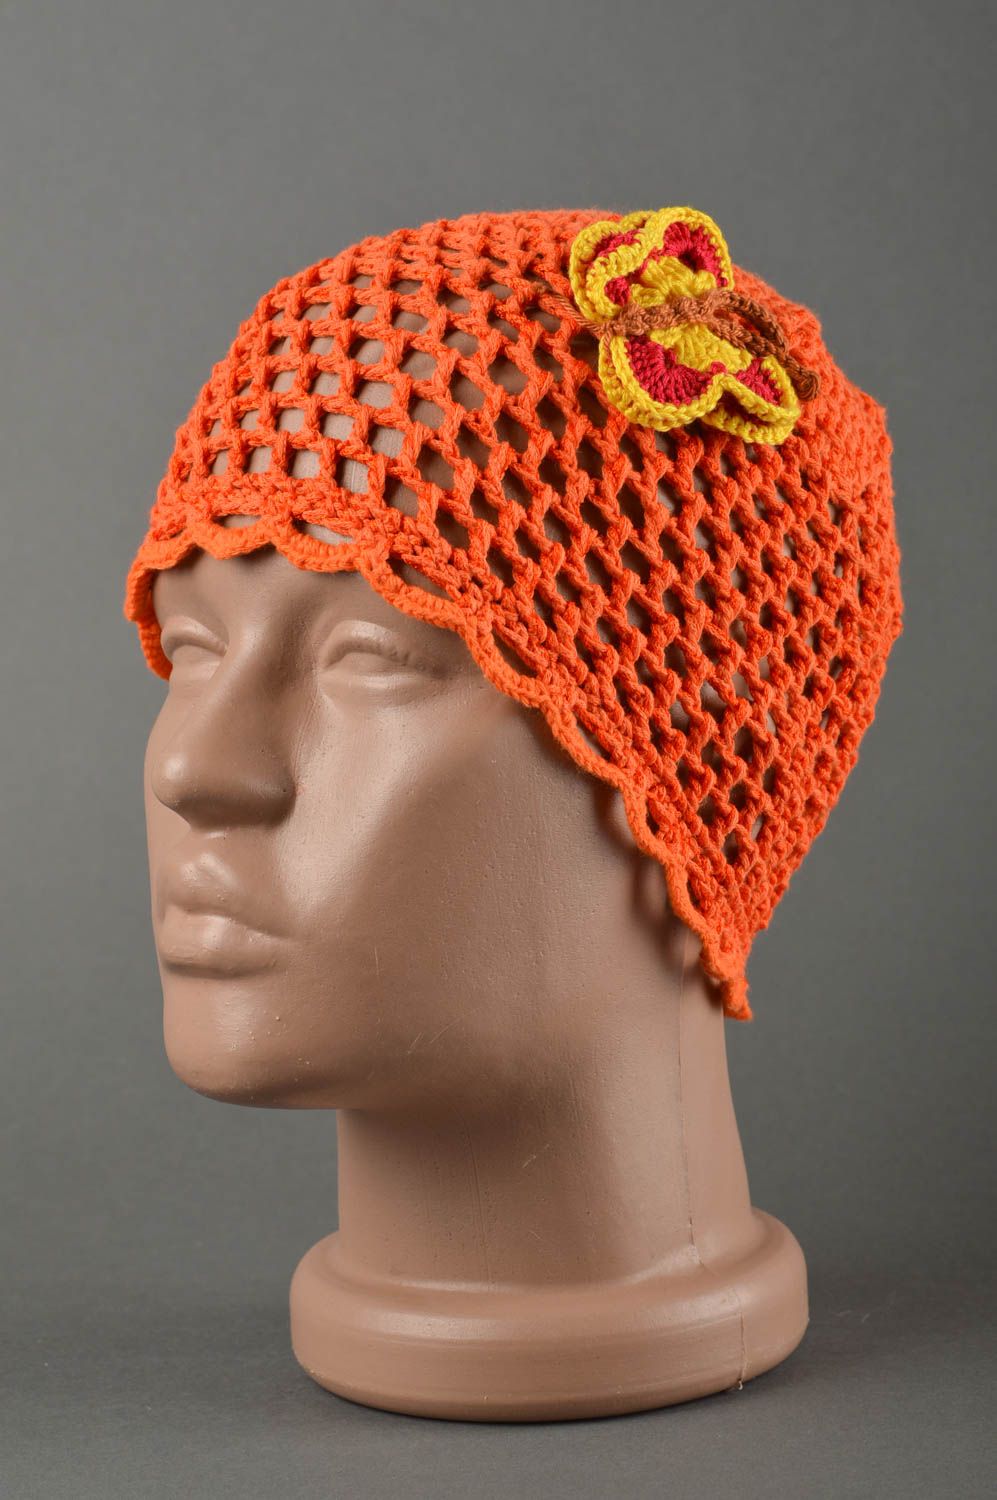 Вязаная шапка для детей хэндмэйд шапочка на девочку весенняя шапка оранжевая фото 1